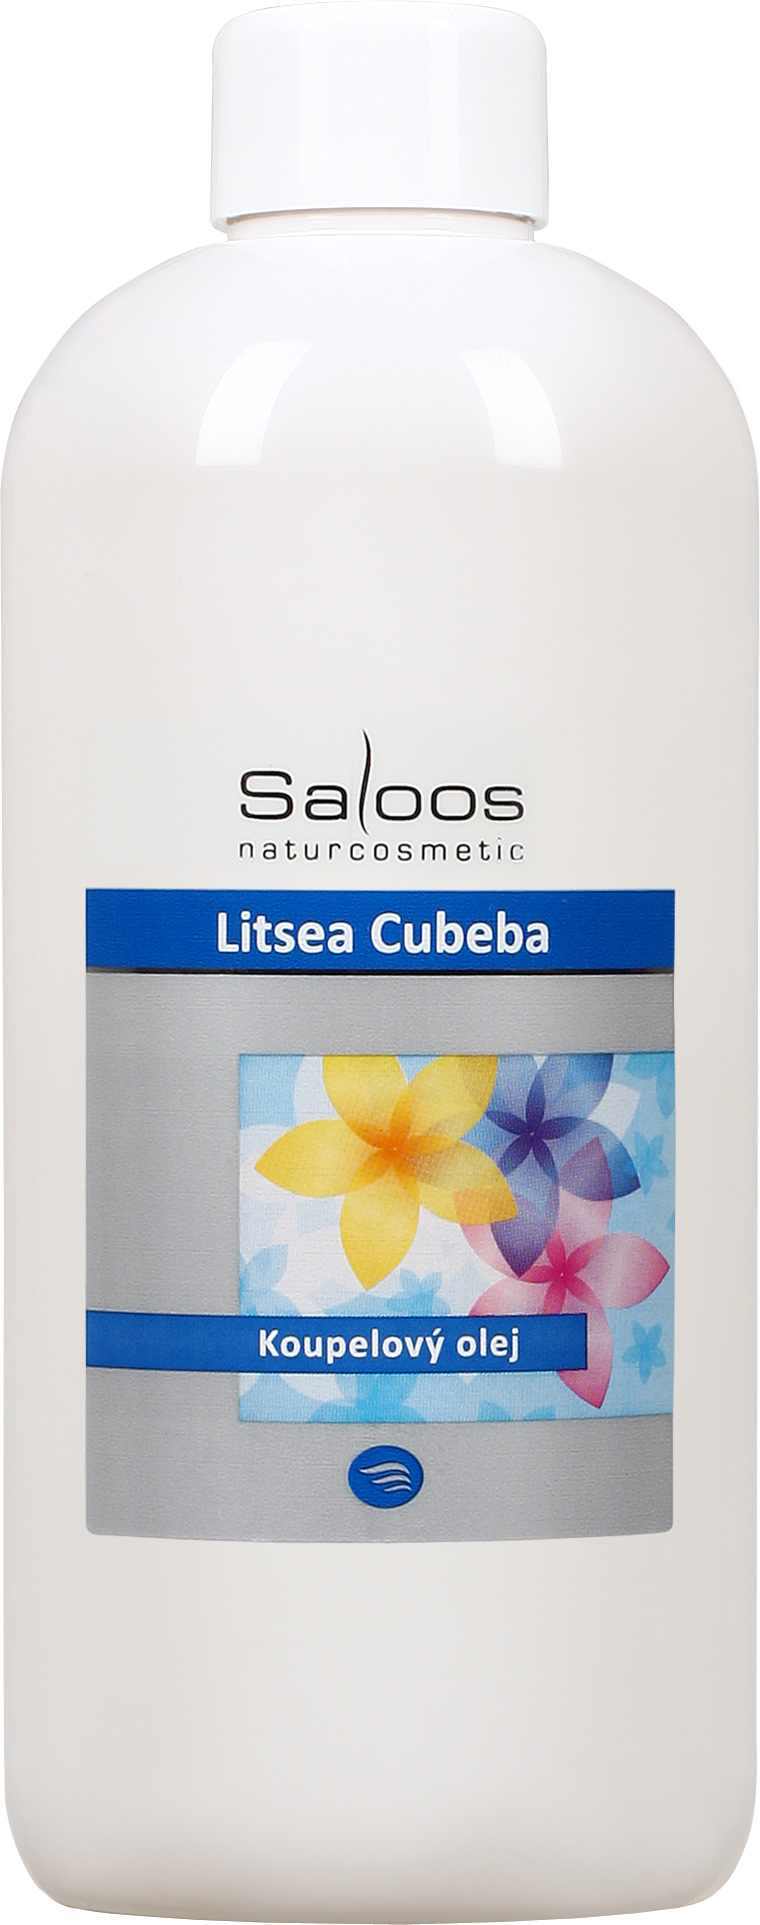 Saloos Litsea cubeba - koupelový olej Balení: 500 ml